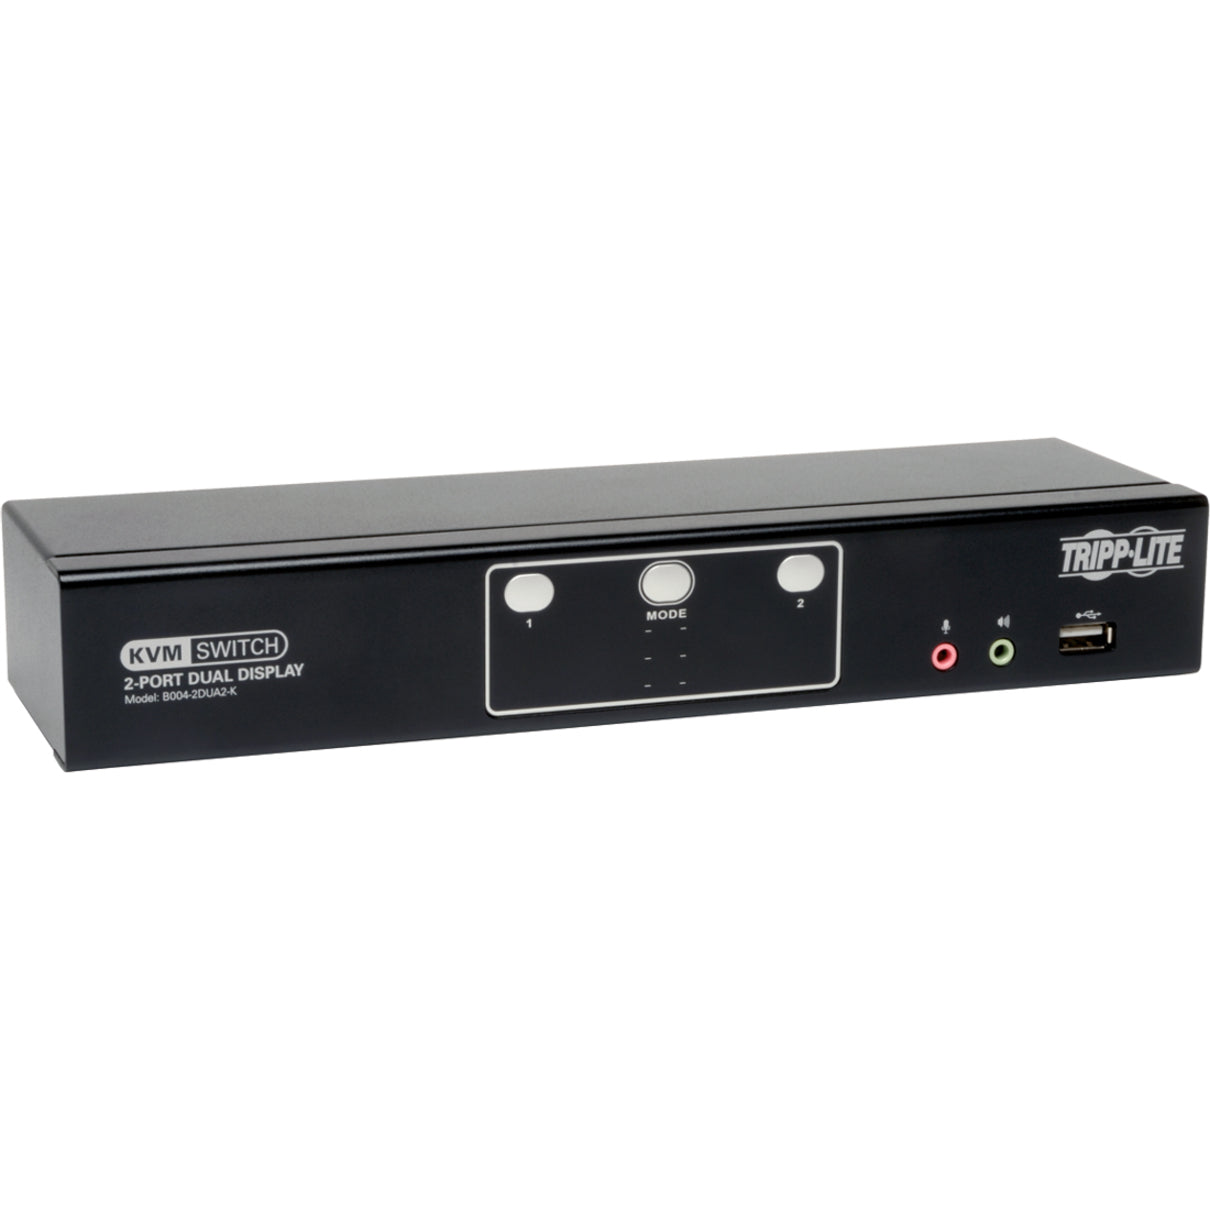 Tripp Lite (B004-2DUA2-K) KVM Switchbox